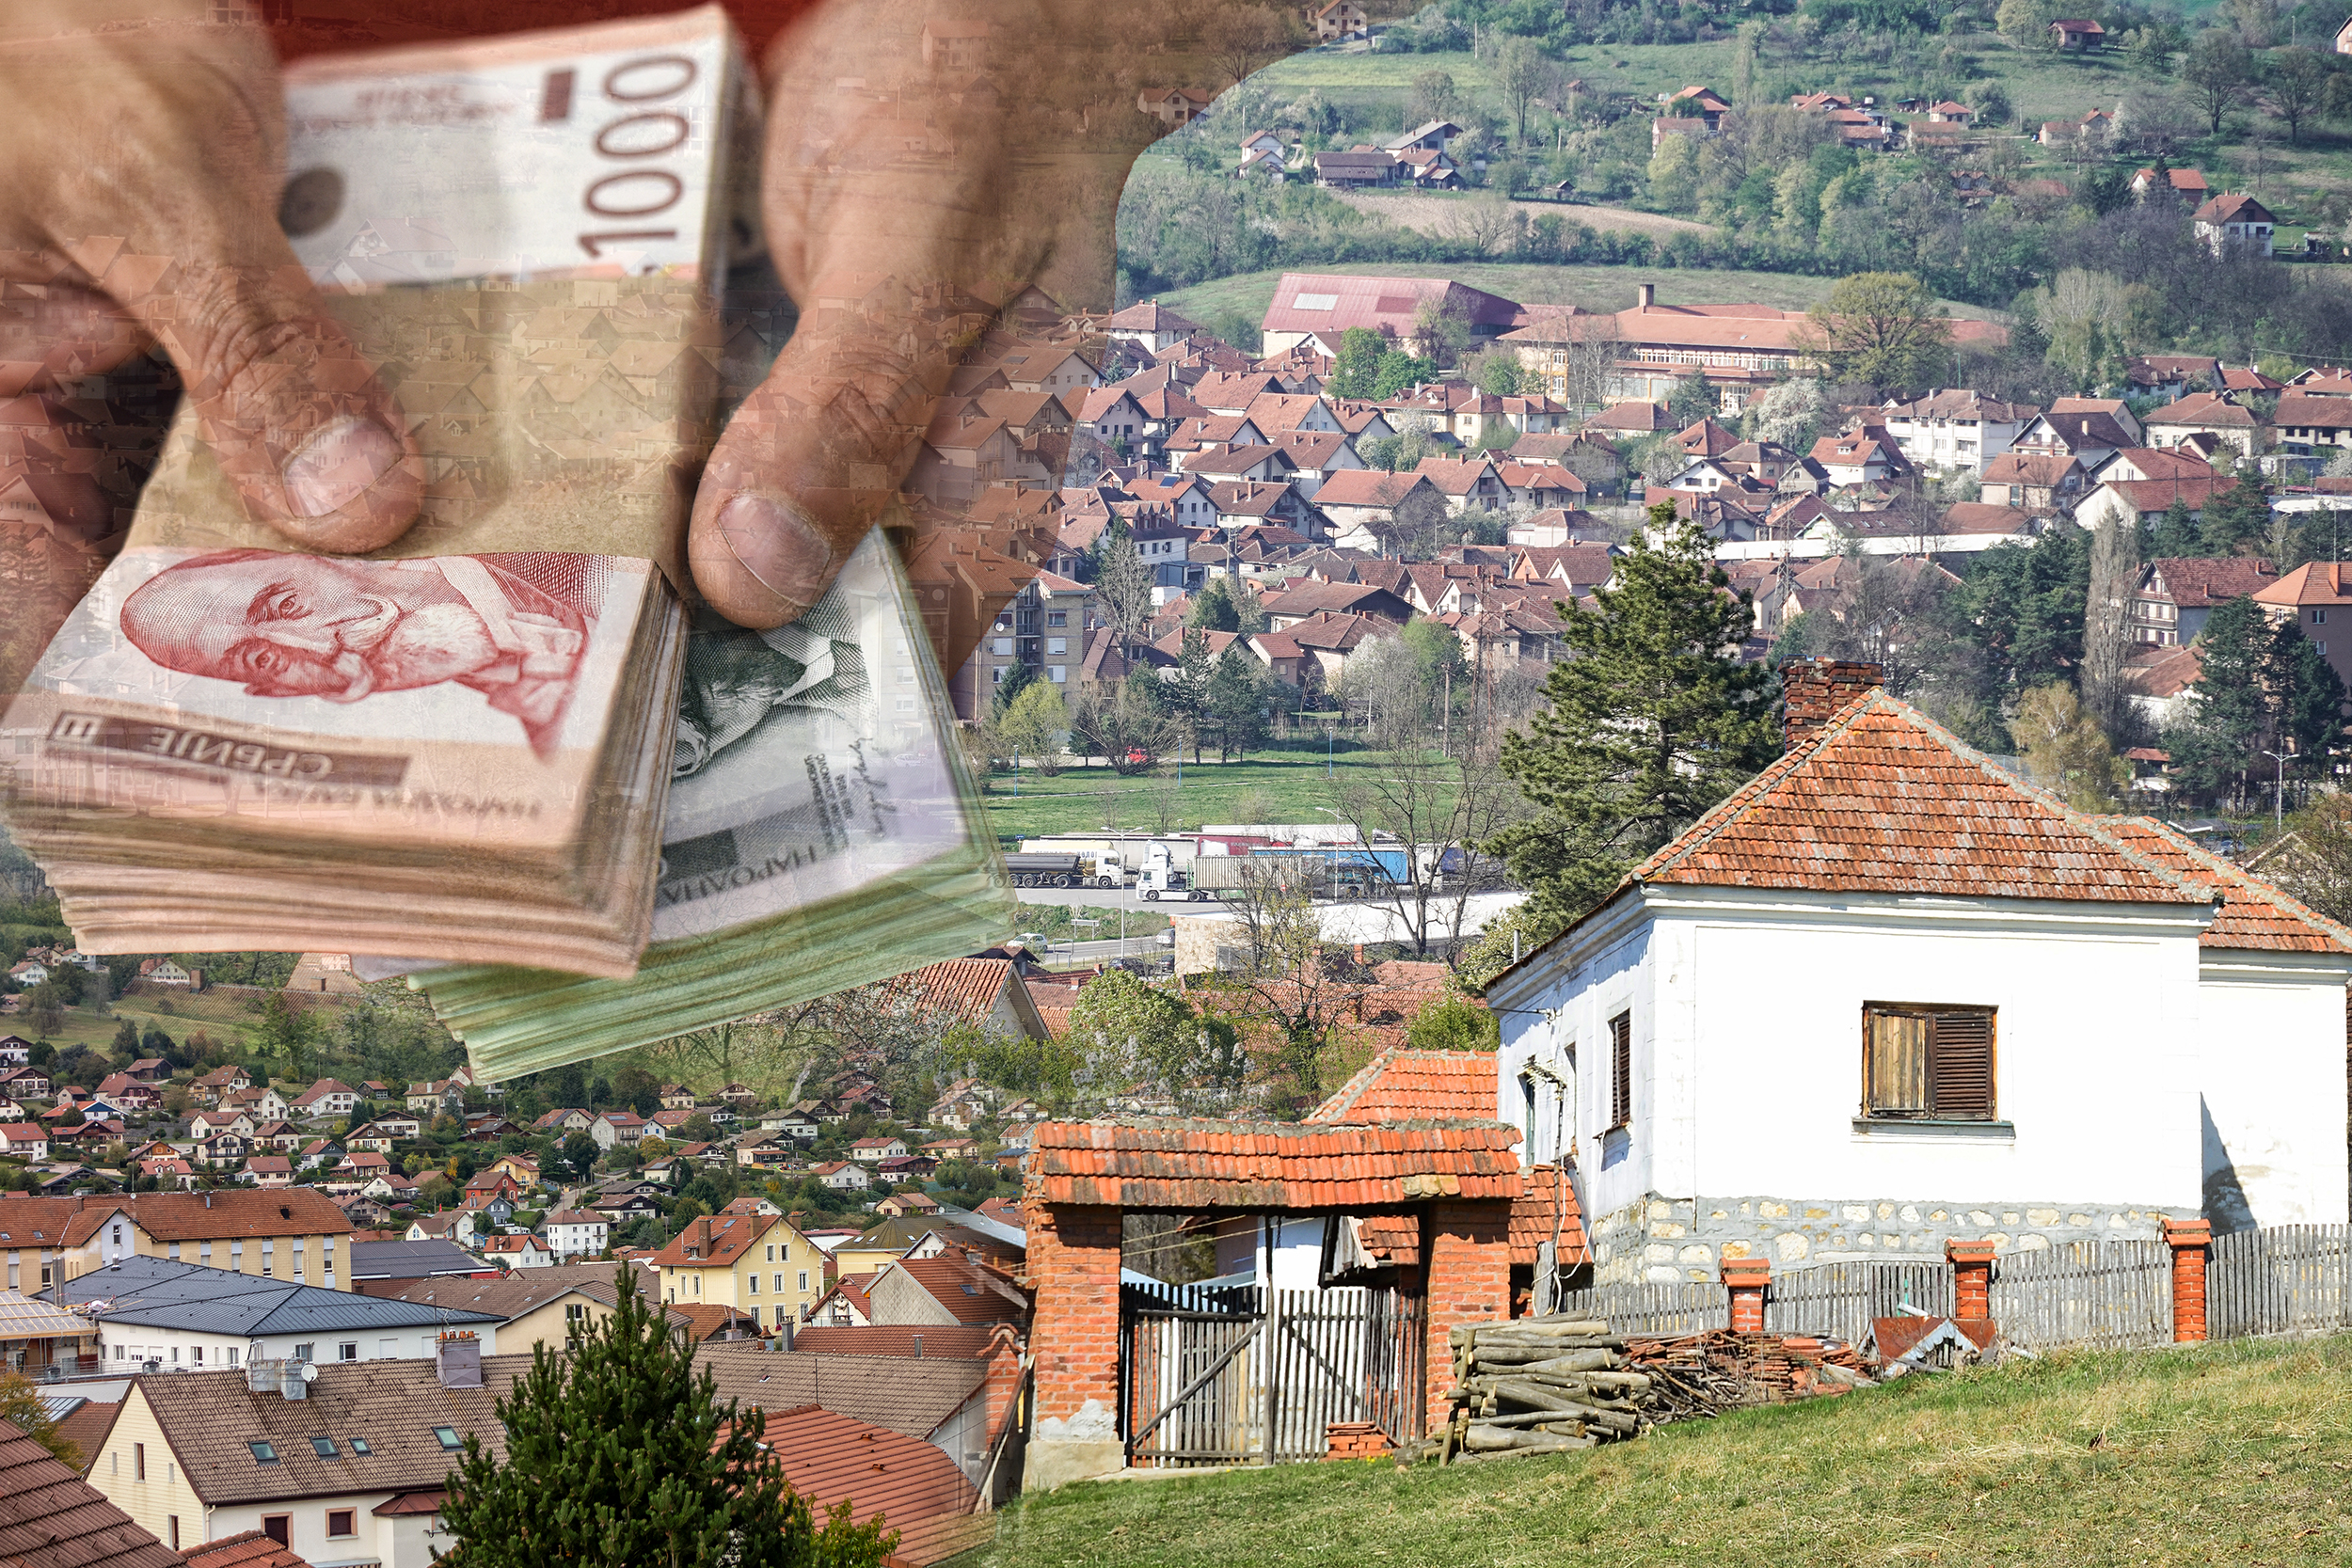 Prodaje kuću od 250 kvadrata za 135.000 evra, a način plaćanja iznenadio je sve